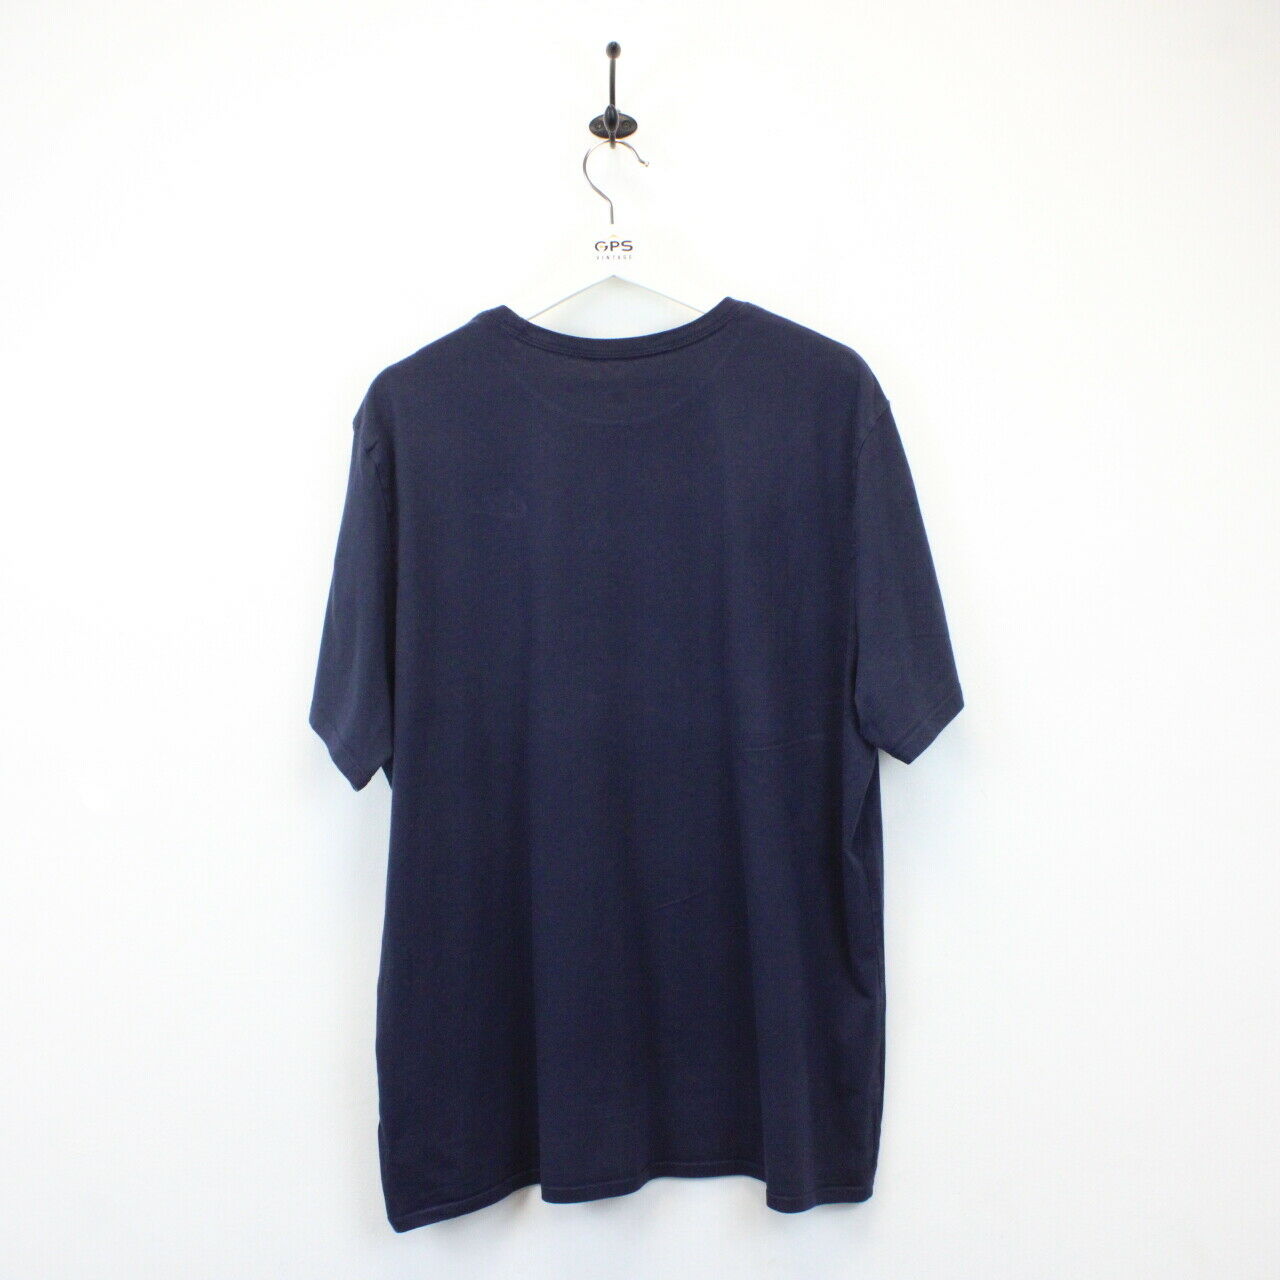 NIKE T-Shirt Navy Blue | XXL